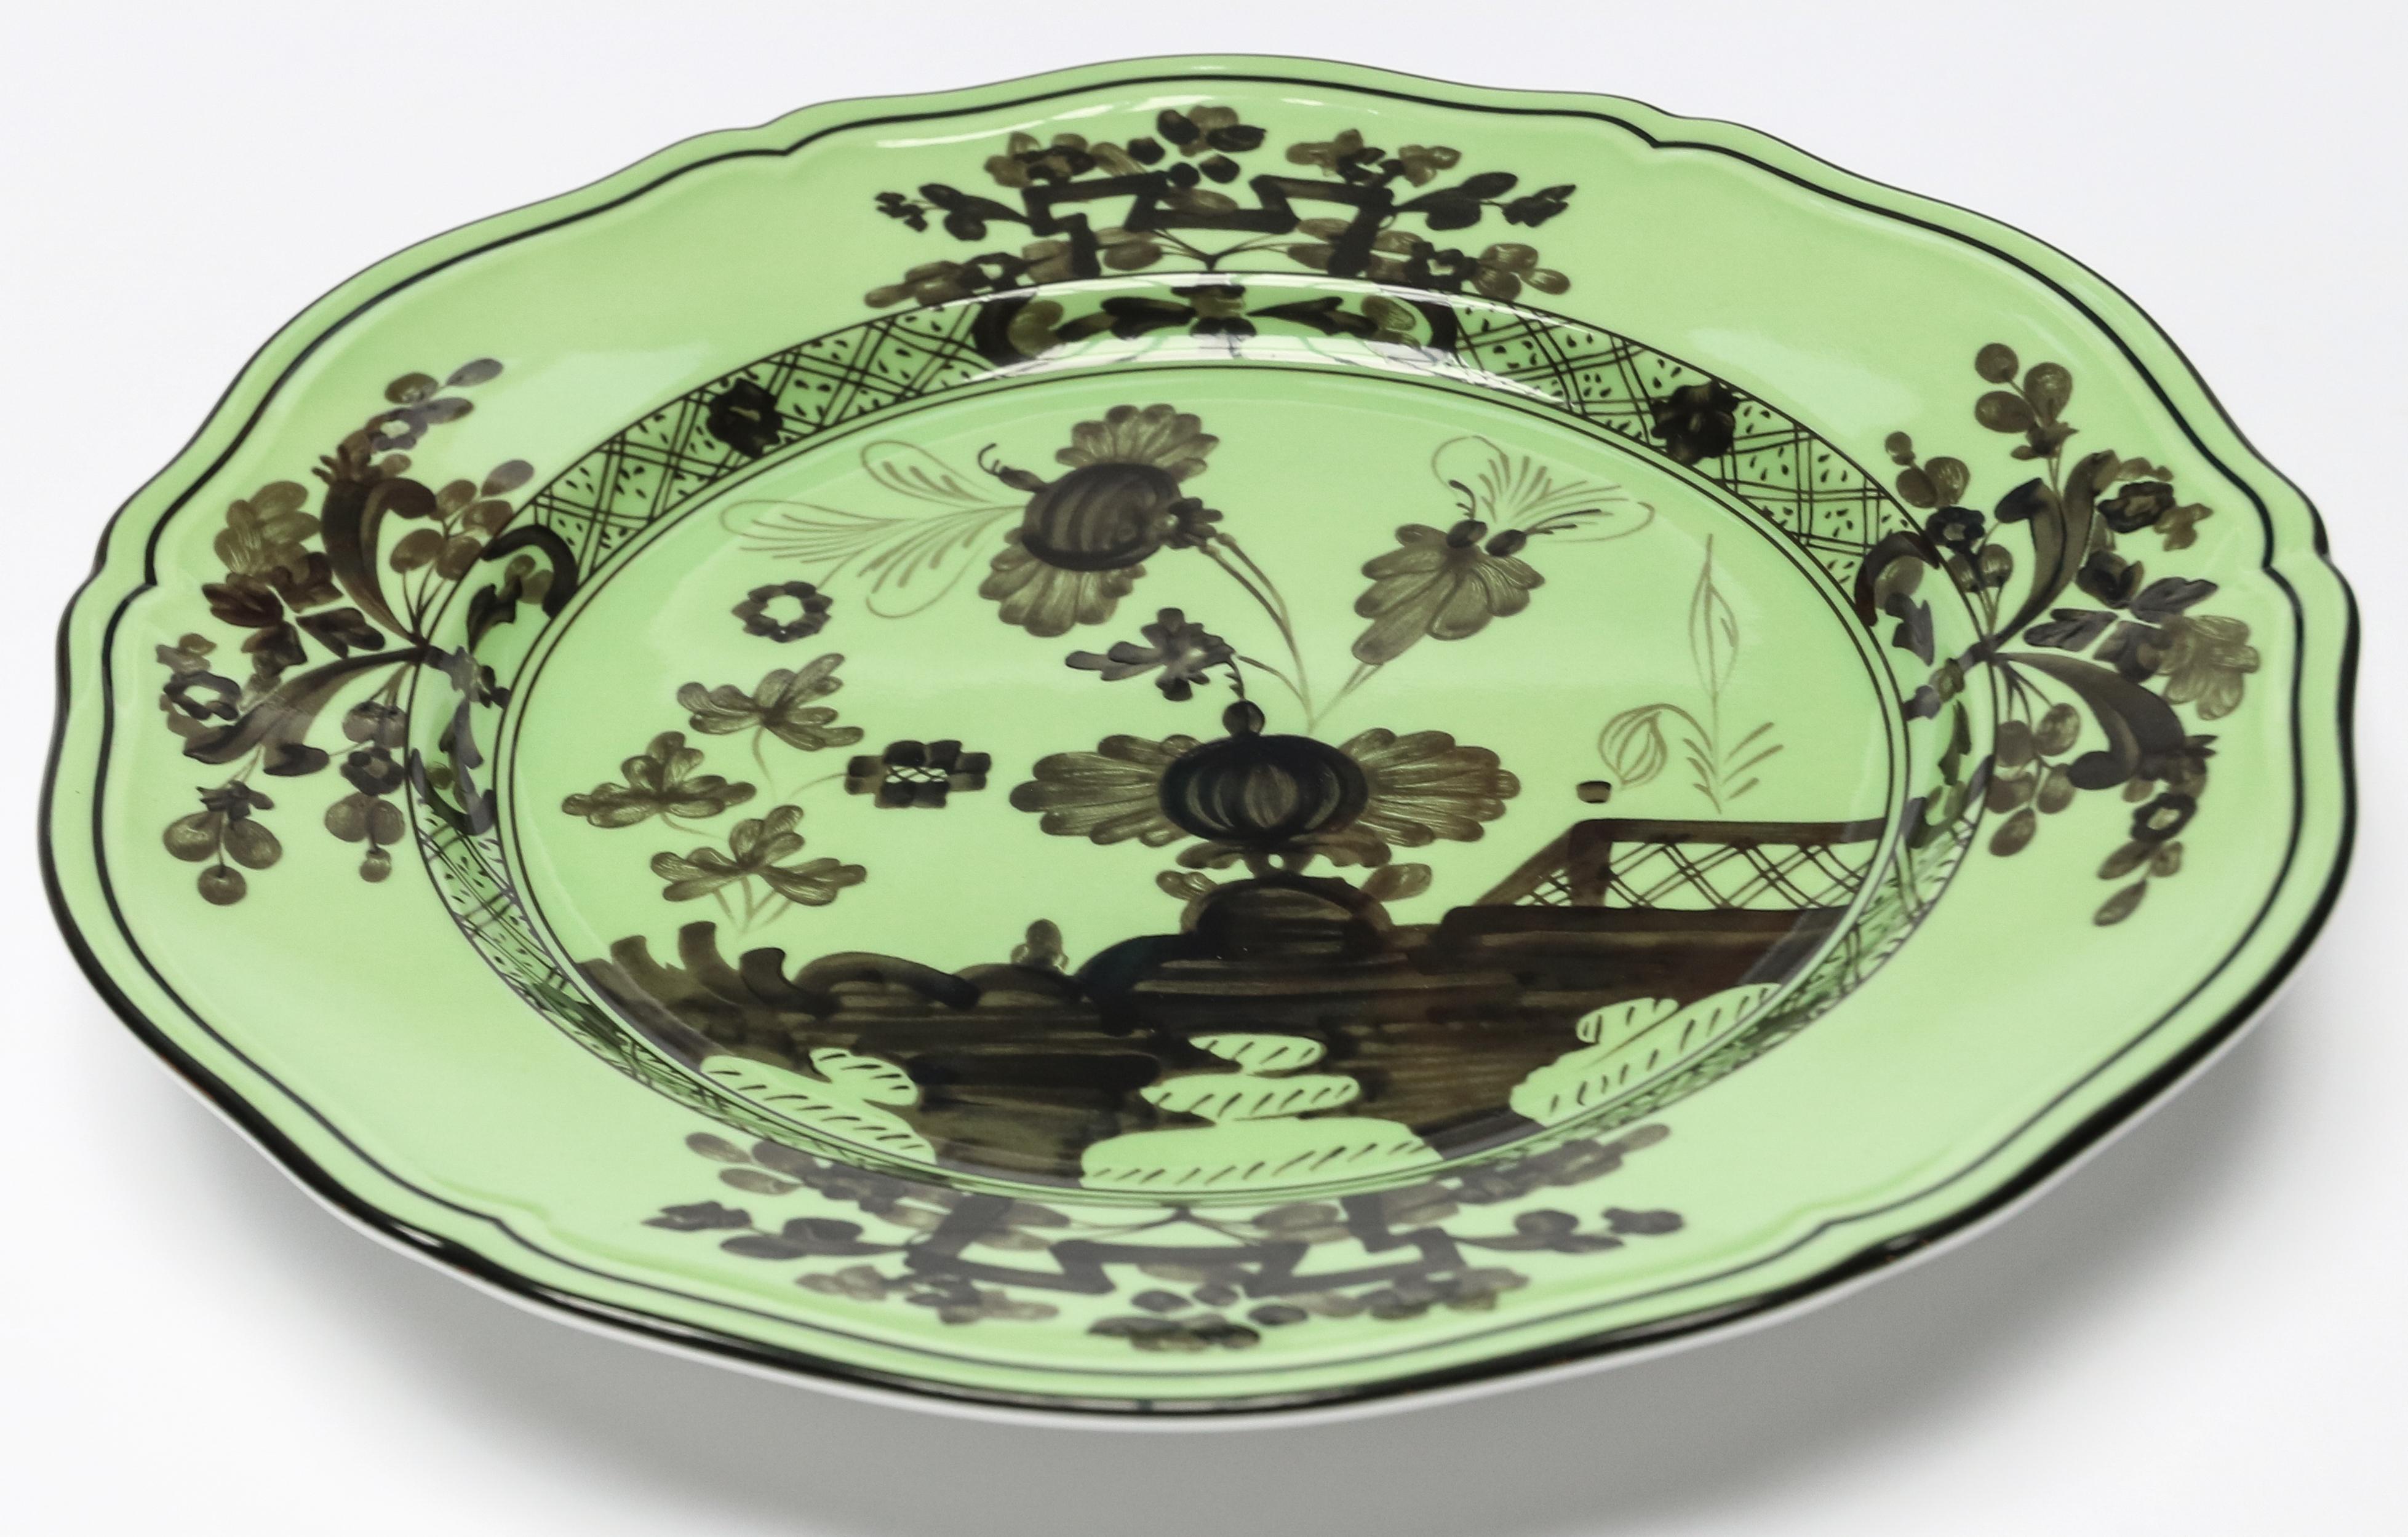 Richard Ginori Oriente Italiano Bario green dinner plate in the Antico Doccia shape 26.5cm in diameter.
 